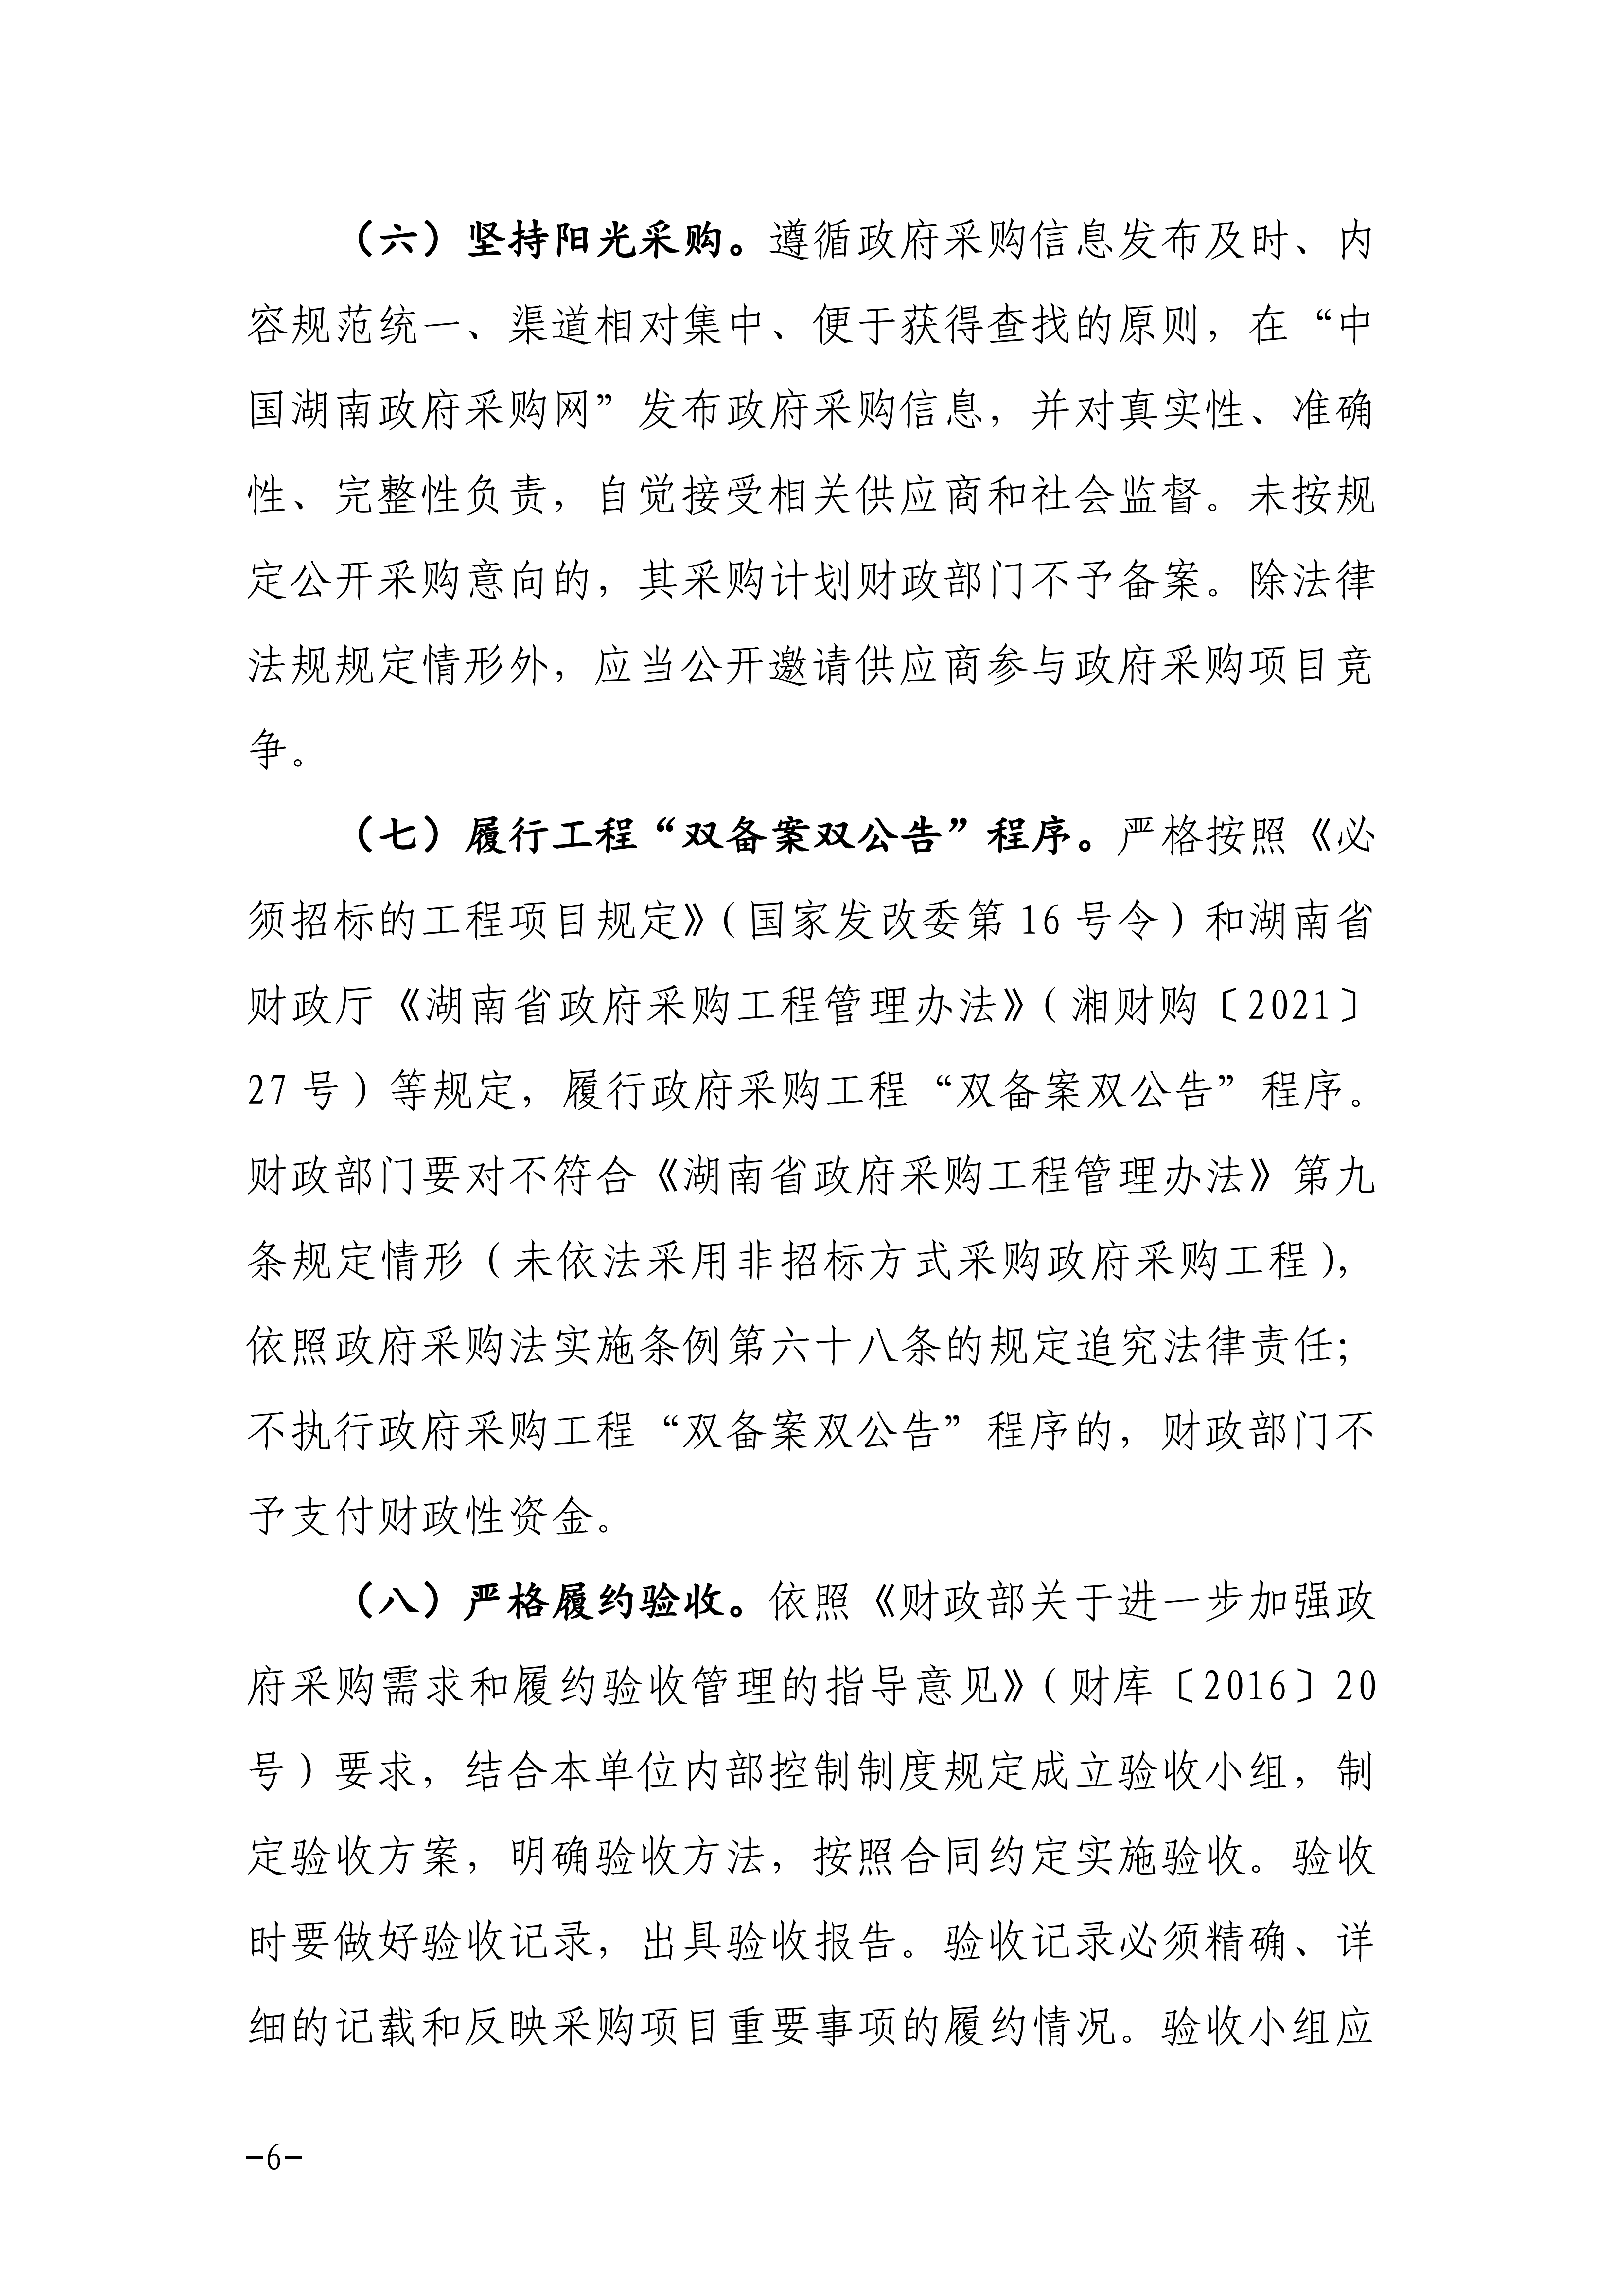 邵阳市关于进一步加强政府采购工作的通知_05.png